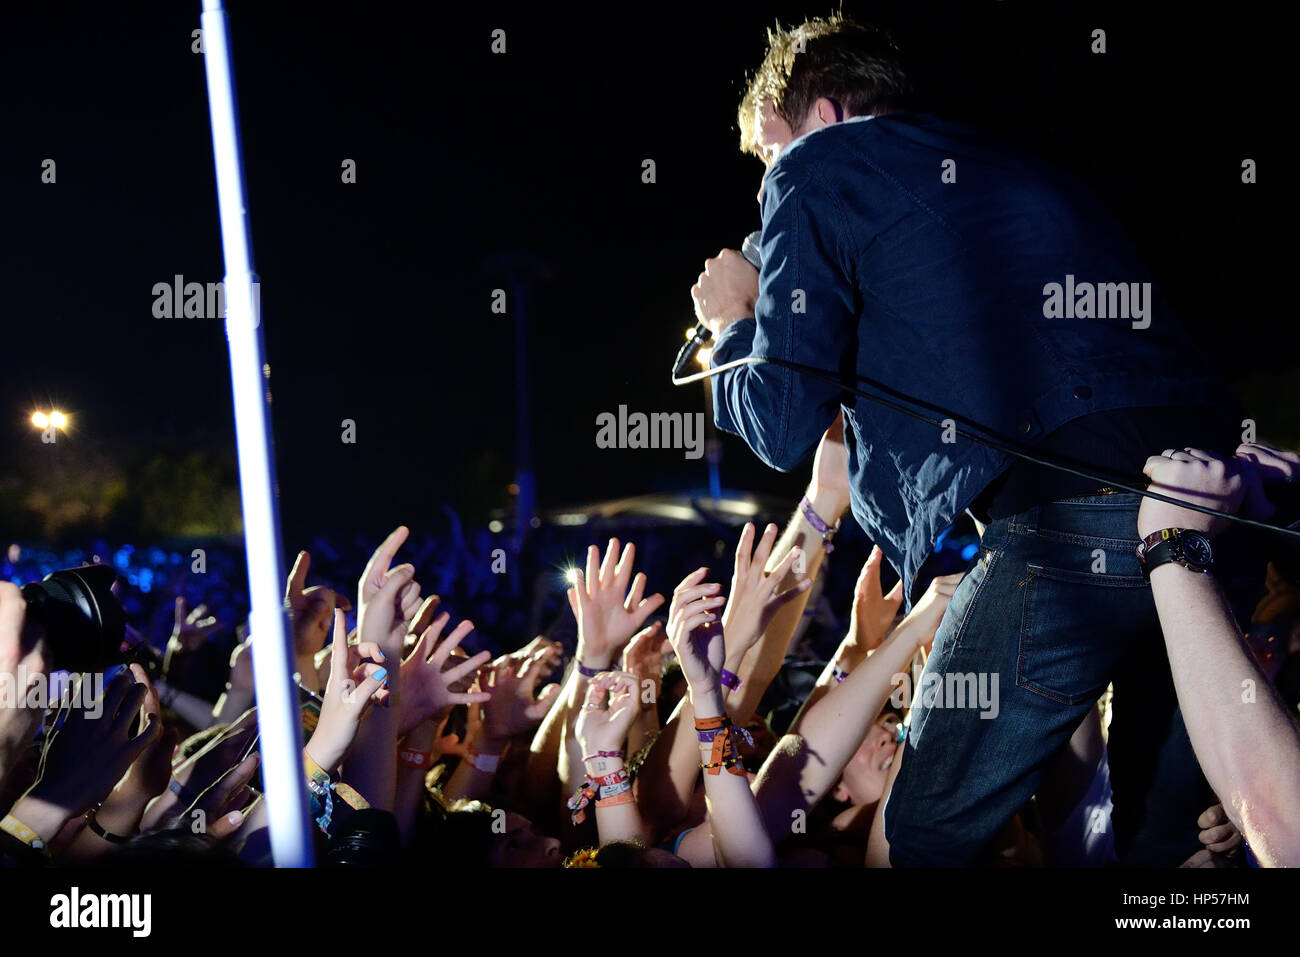 BENICASSIM, Spagna - 18 Luglio: Blur (banda) in concerto a FIB Festival il 18 luglio 2015 a Benicassim, Spagna. Foto Stock